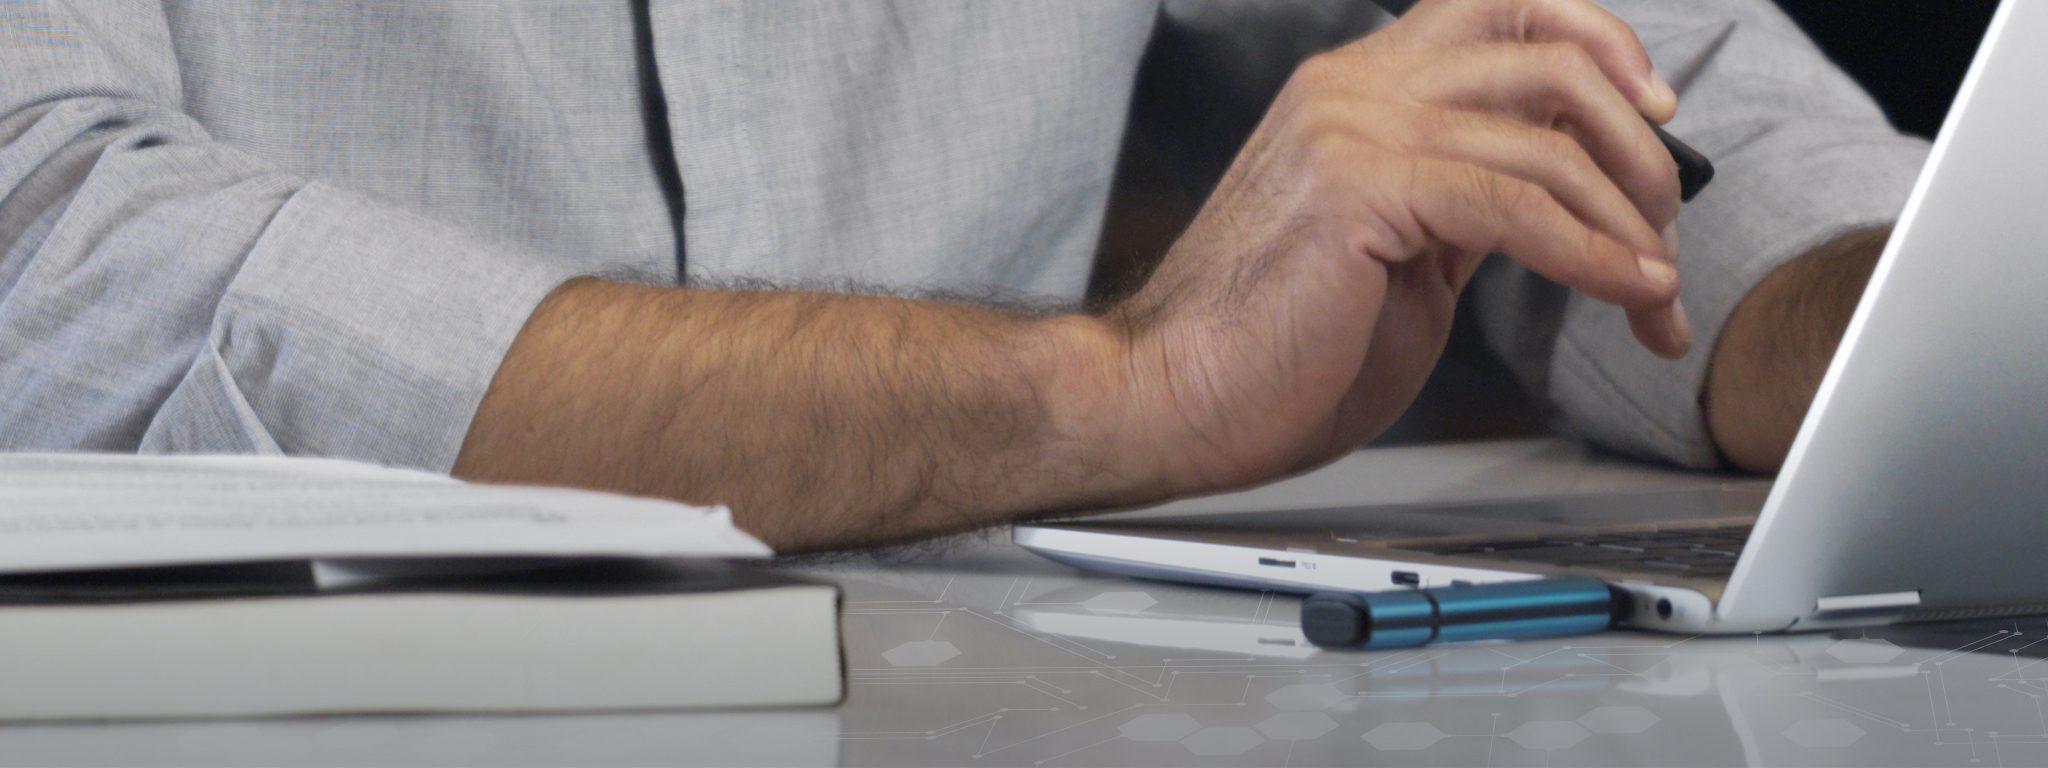 Крупный план ноутбука с подключенным USB-накопителем Kingston IronKey и мужской рукой, печатающей на клавиатуре